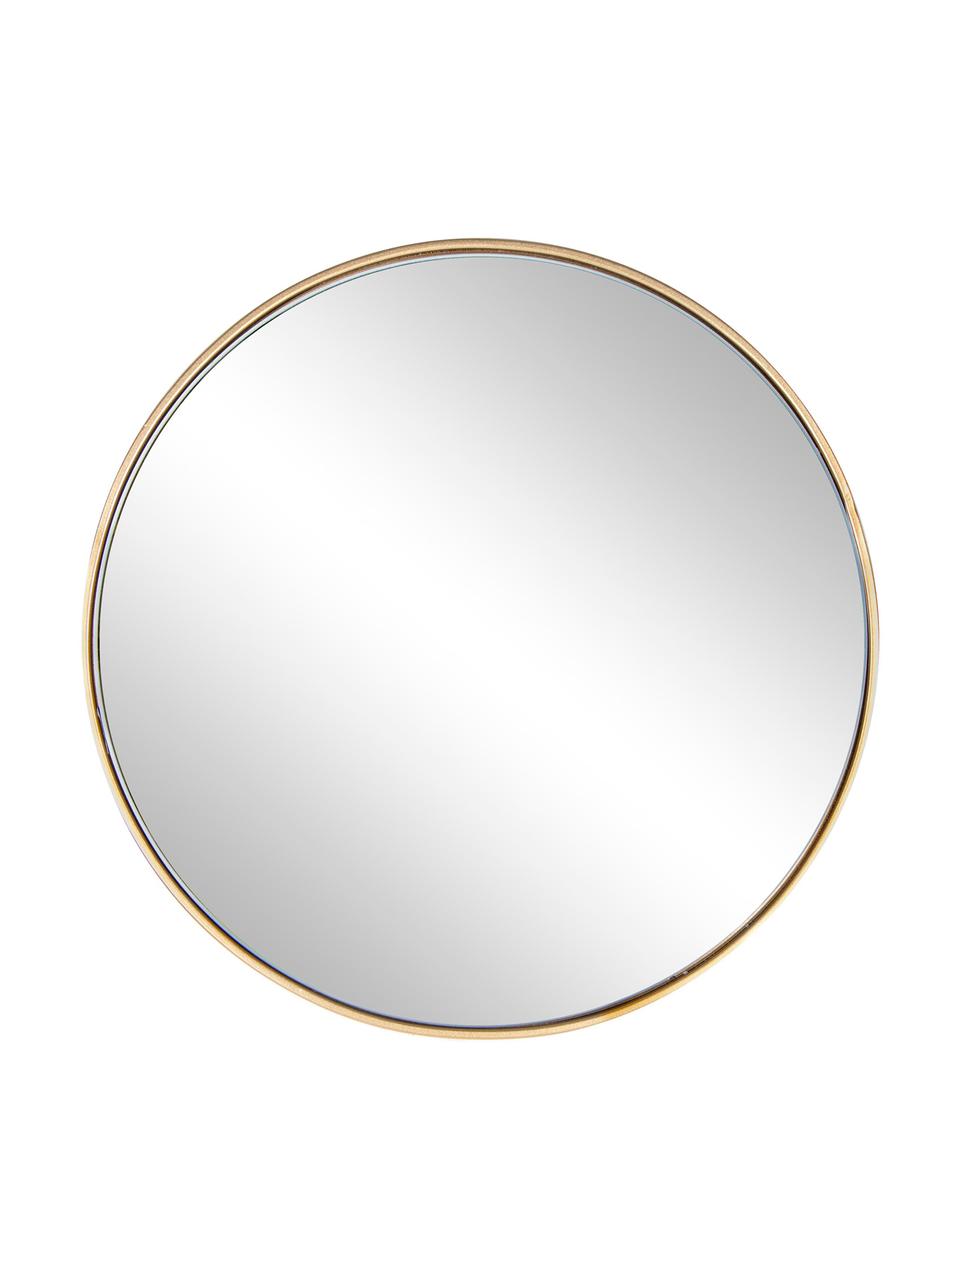 Runder Wandspiegel Nucleos mit Goldrahmen, Rahmen: Metall, beschichtet, Spiegelfläche: Spiegelglas, Messingfarben, Ø 40 cm